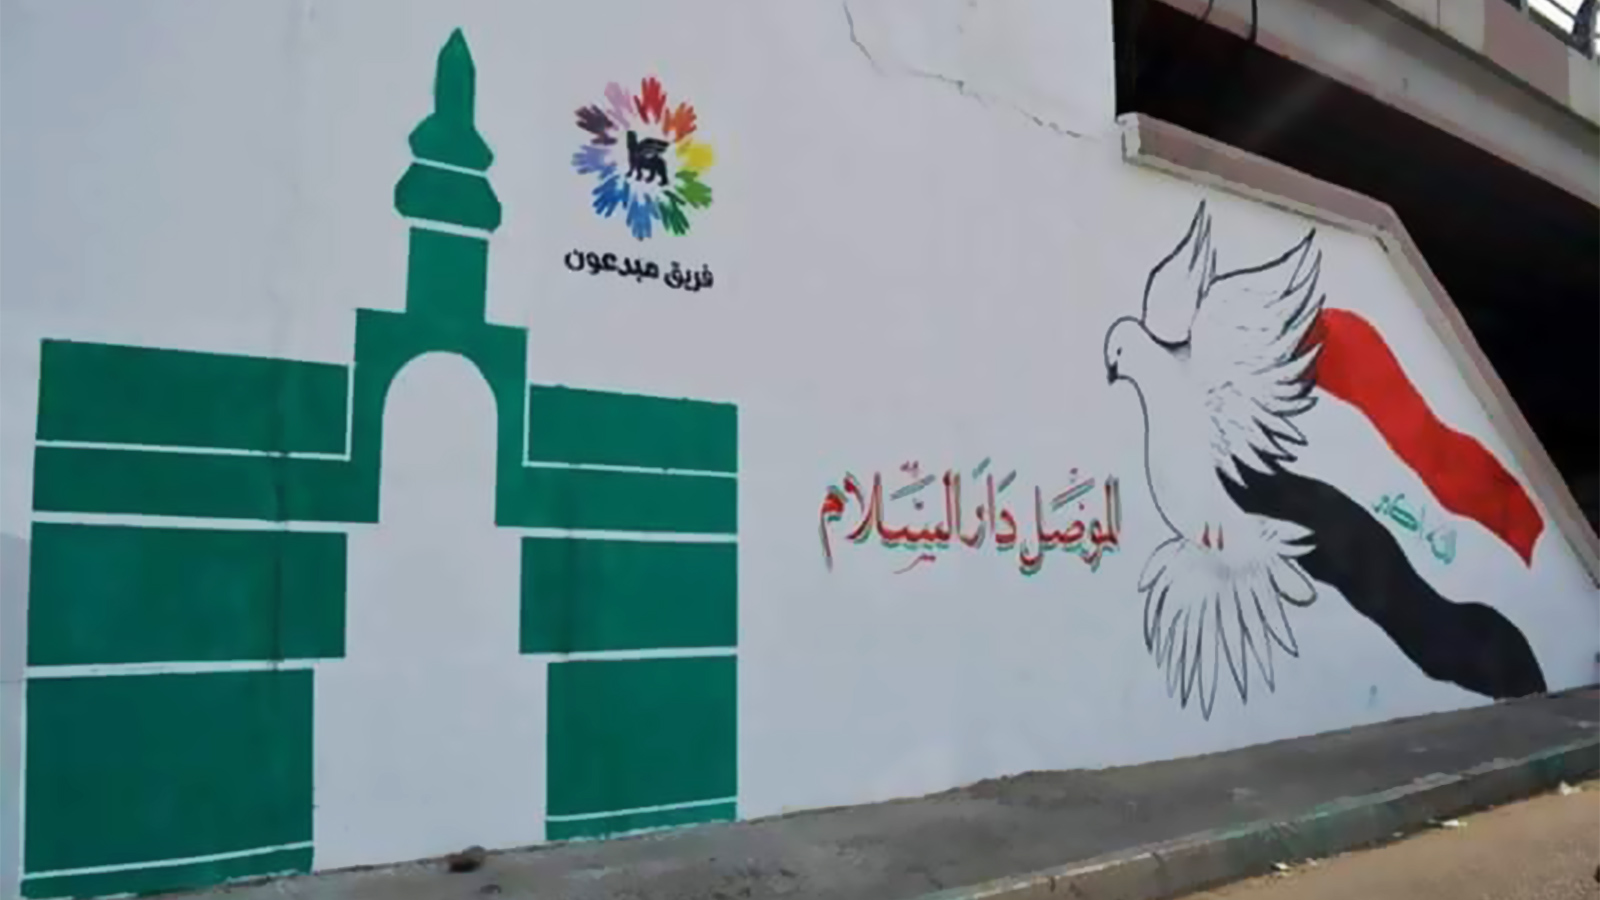 شباب من الموصل اختاروا الفن لبث رسائل بأن مدينتهم متمسكة بالحياة(الجزيرة)